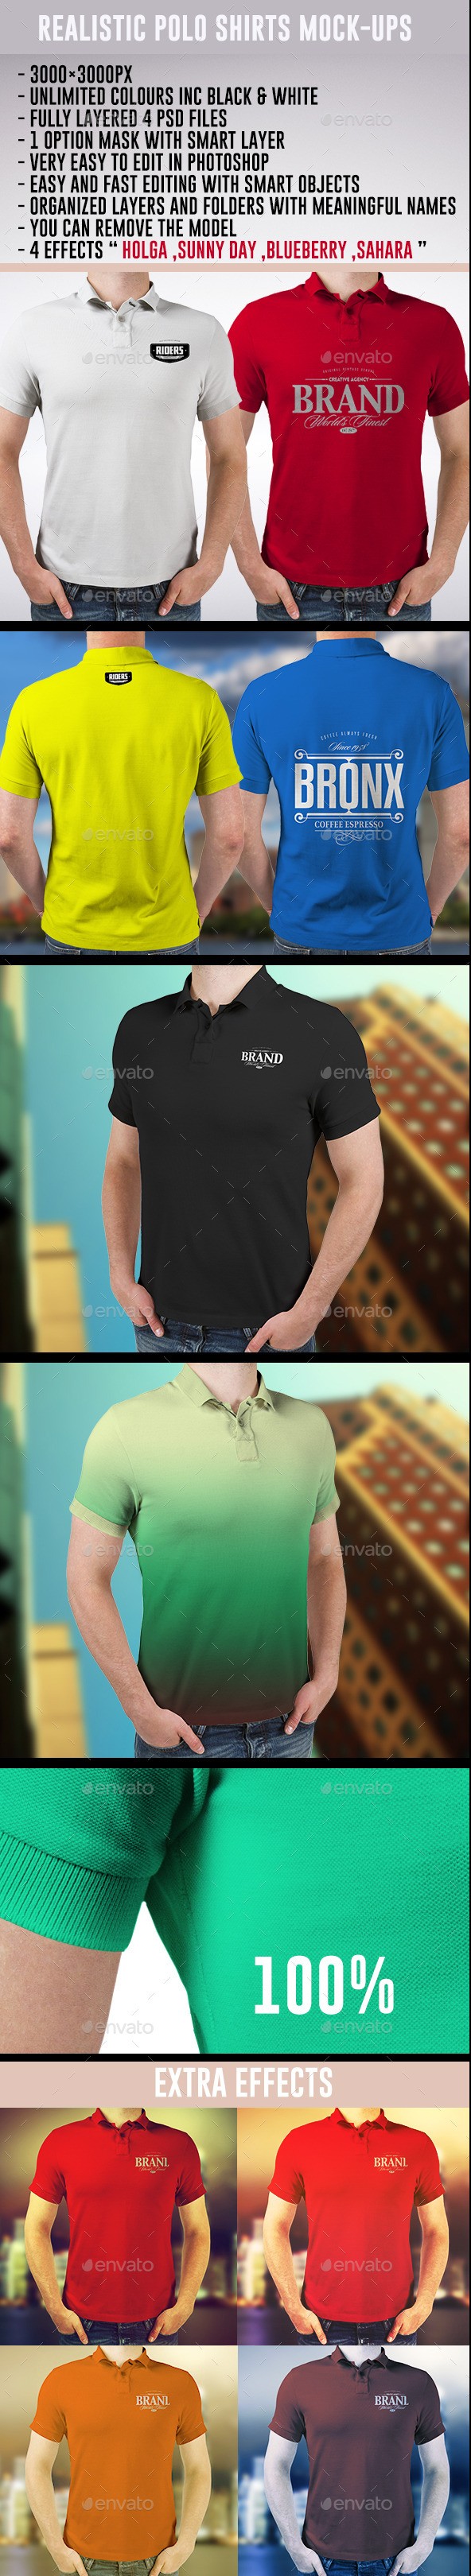 Realistic Polo Shirts Mockups